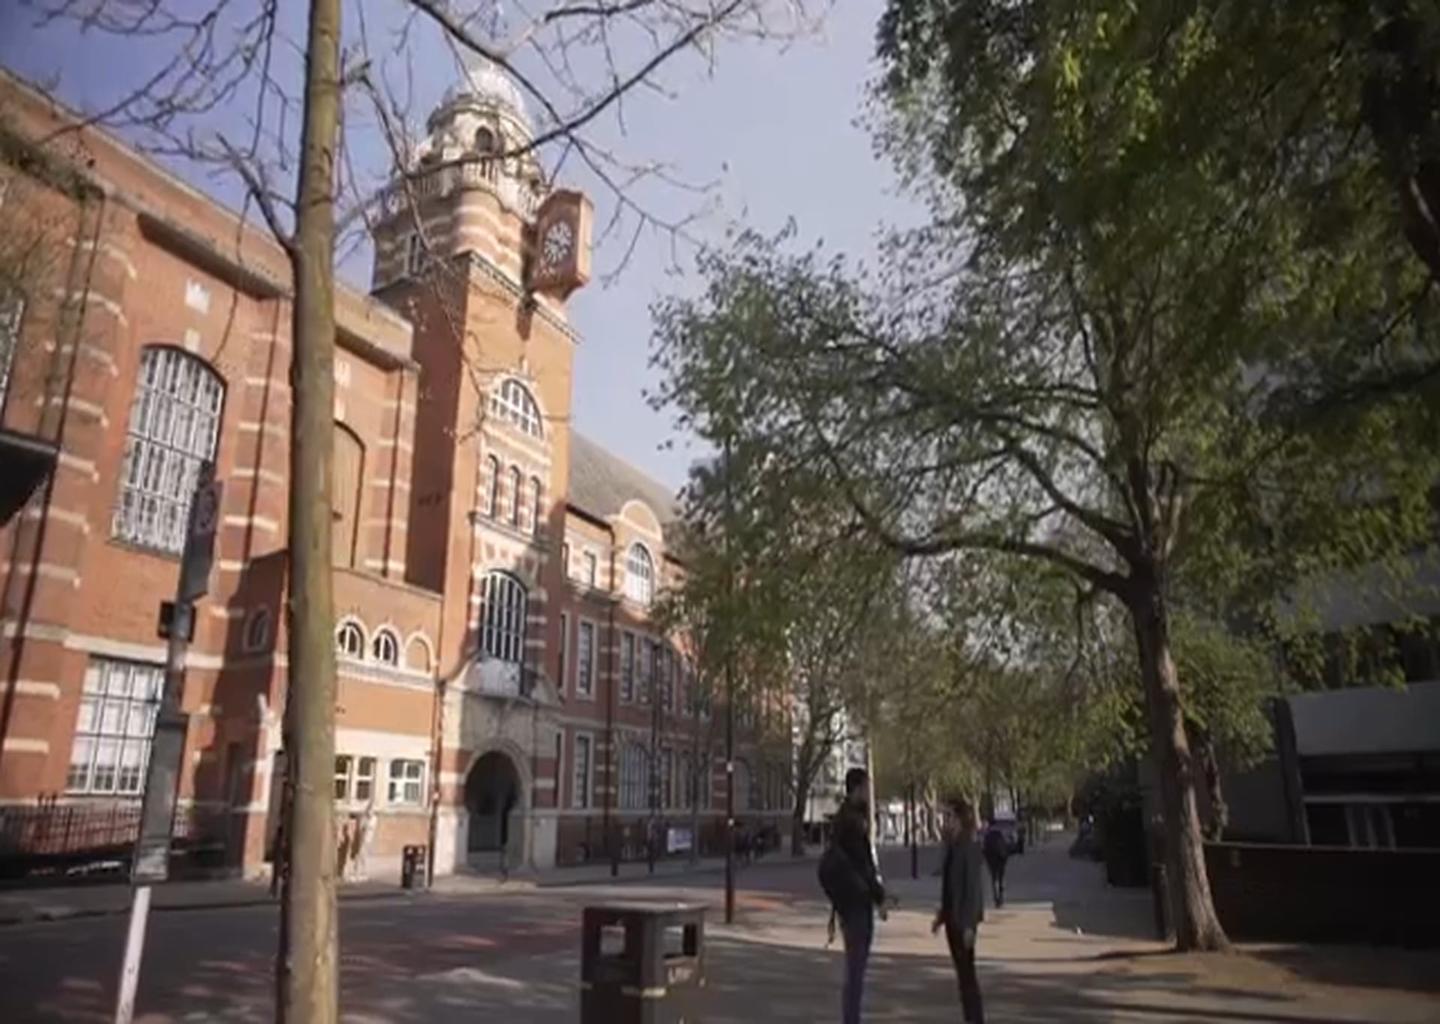 visit city university of london